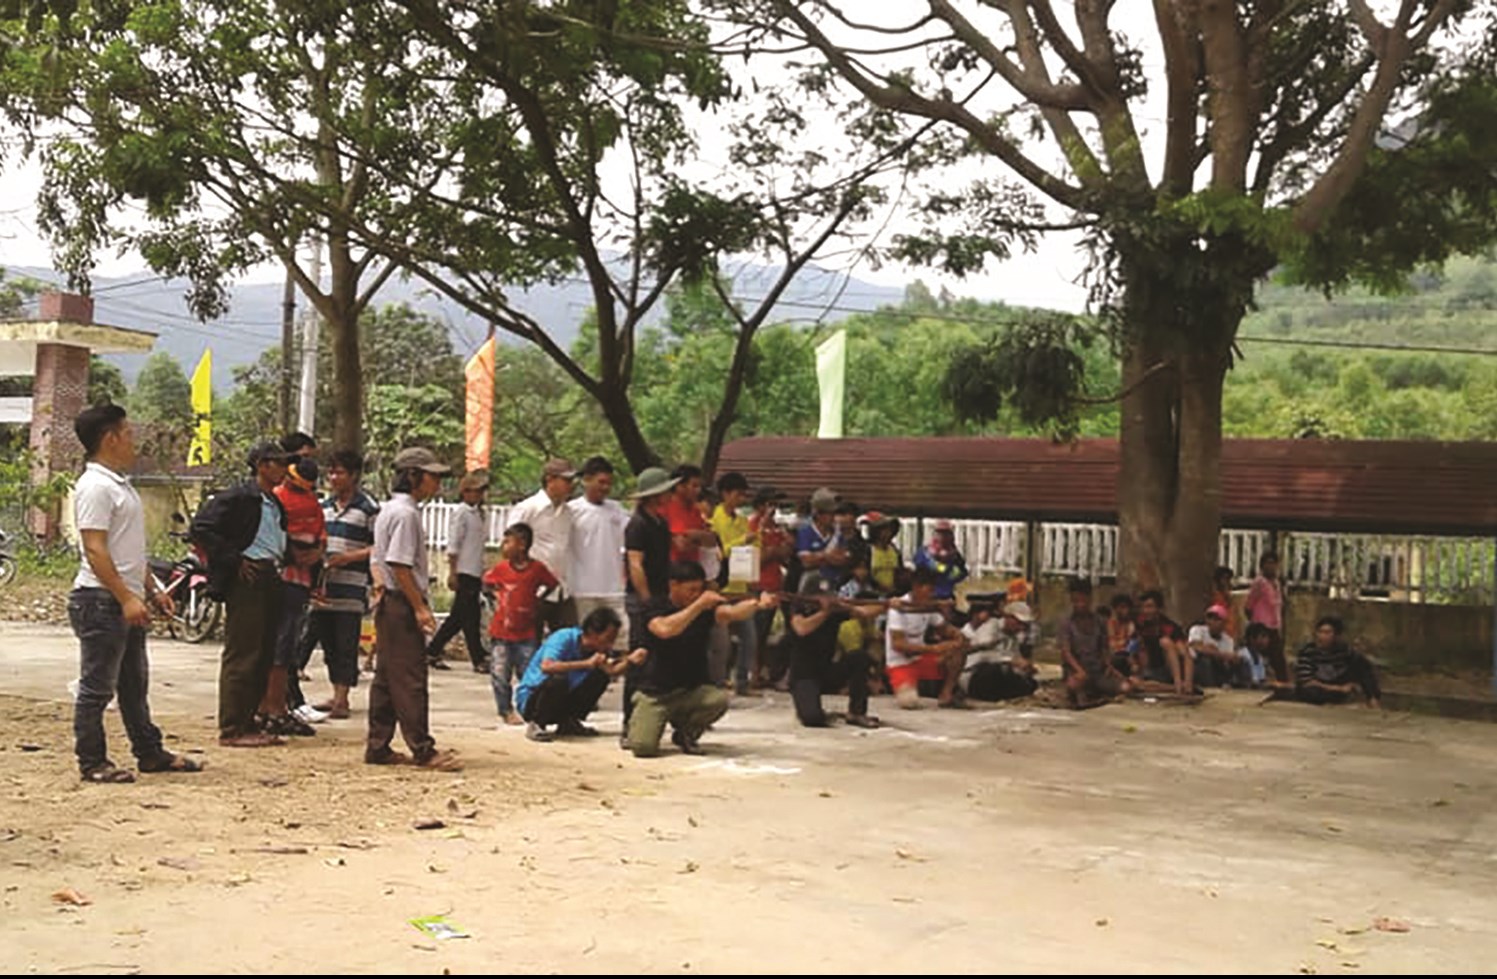 Cuộc thi bắn nỏ ngày 26/6/2020 tại xã Vĩnh An, Tây Sơn, Bình Định. (Ảnh: Đinh Thép là huấn luyện viên cho đội bắn nỏ của huyện)